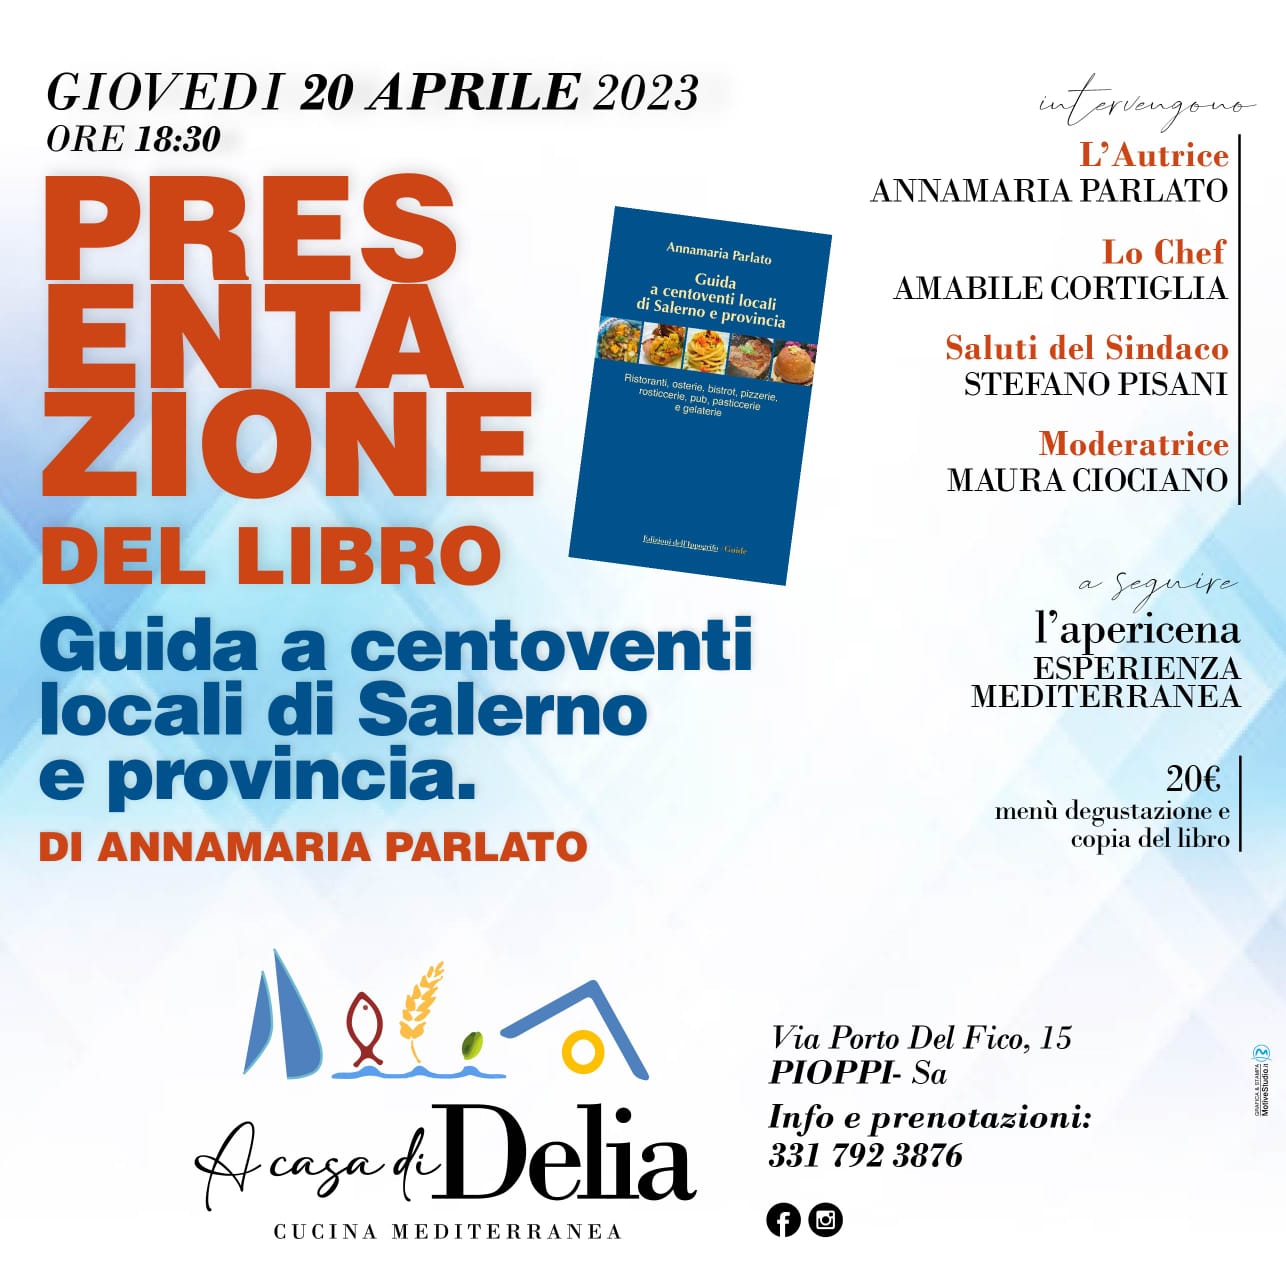 La Guida a Centoventi locali di Salerno e provincia si presenta a Pioppi «A casa di Delia»